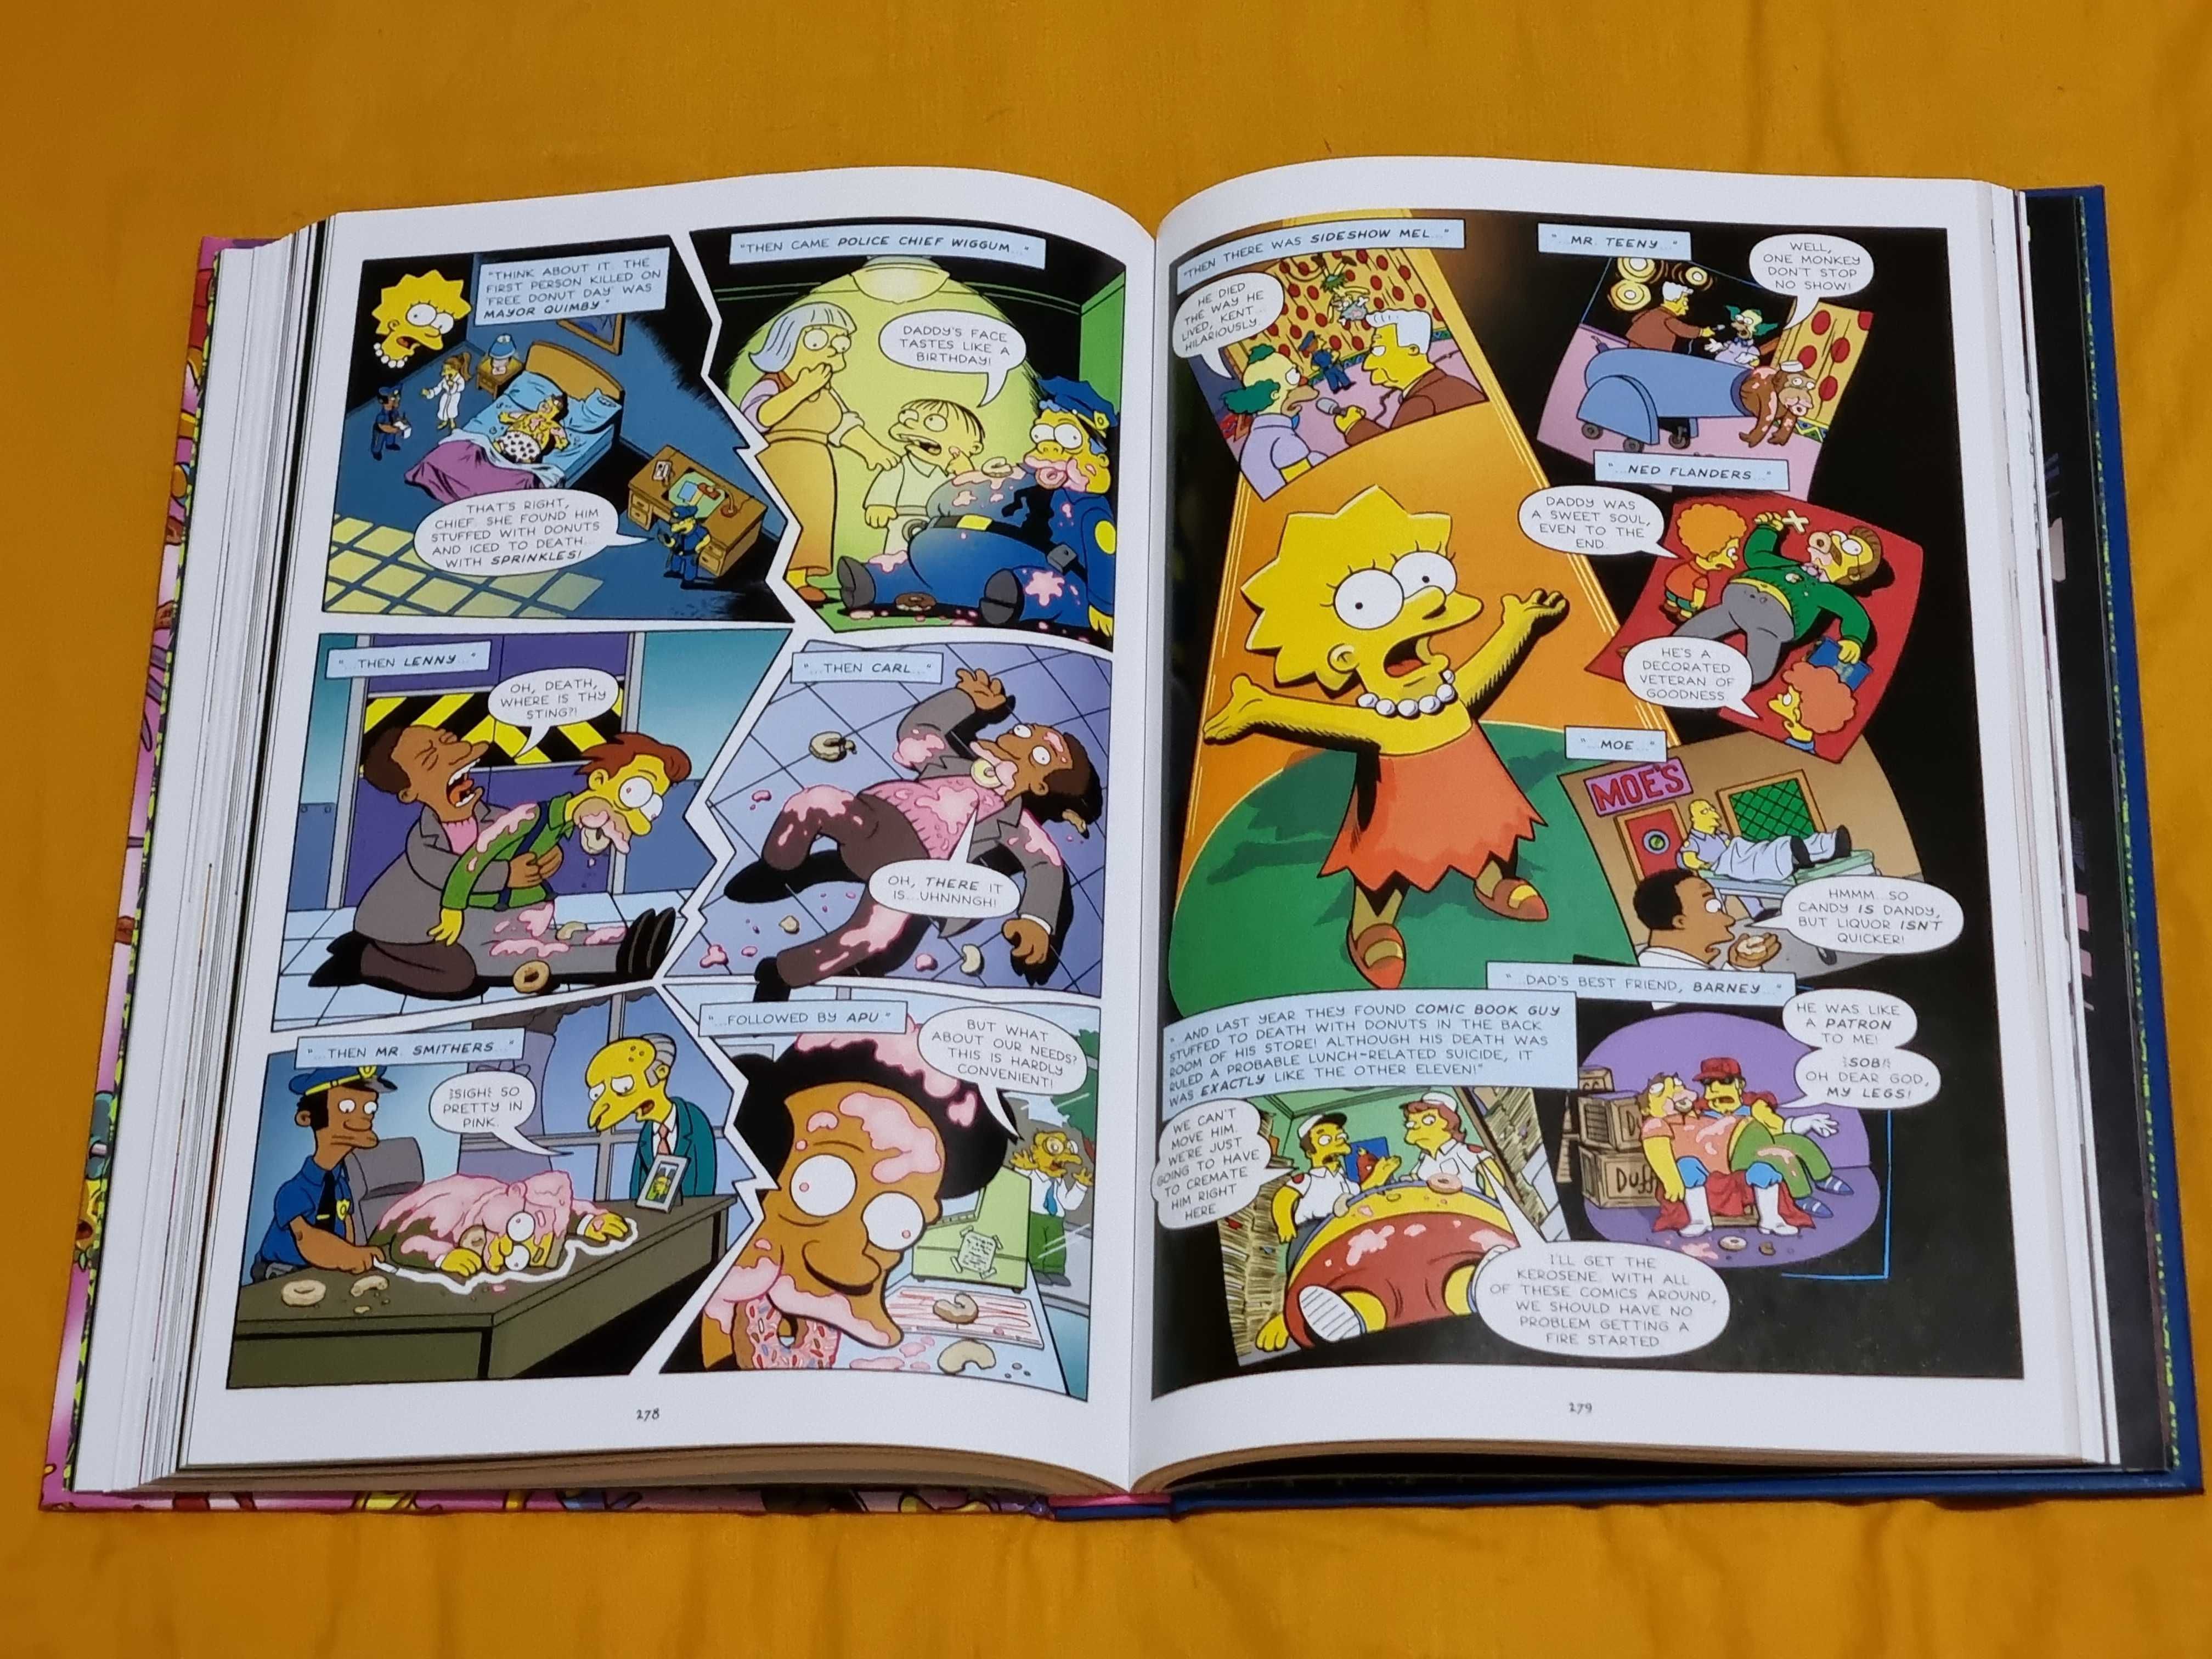 The Simpsons Treehouse of Horror Ominous Omnibus Volumul 1